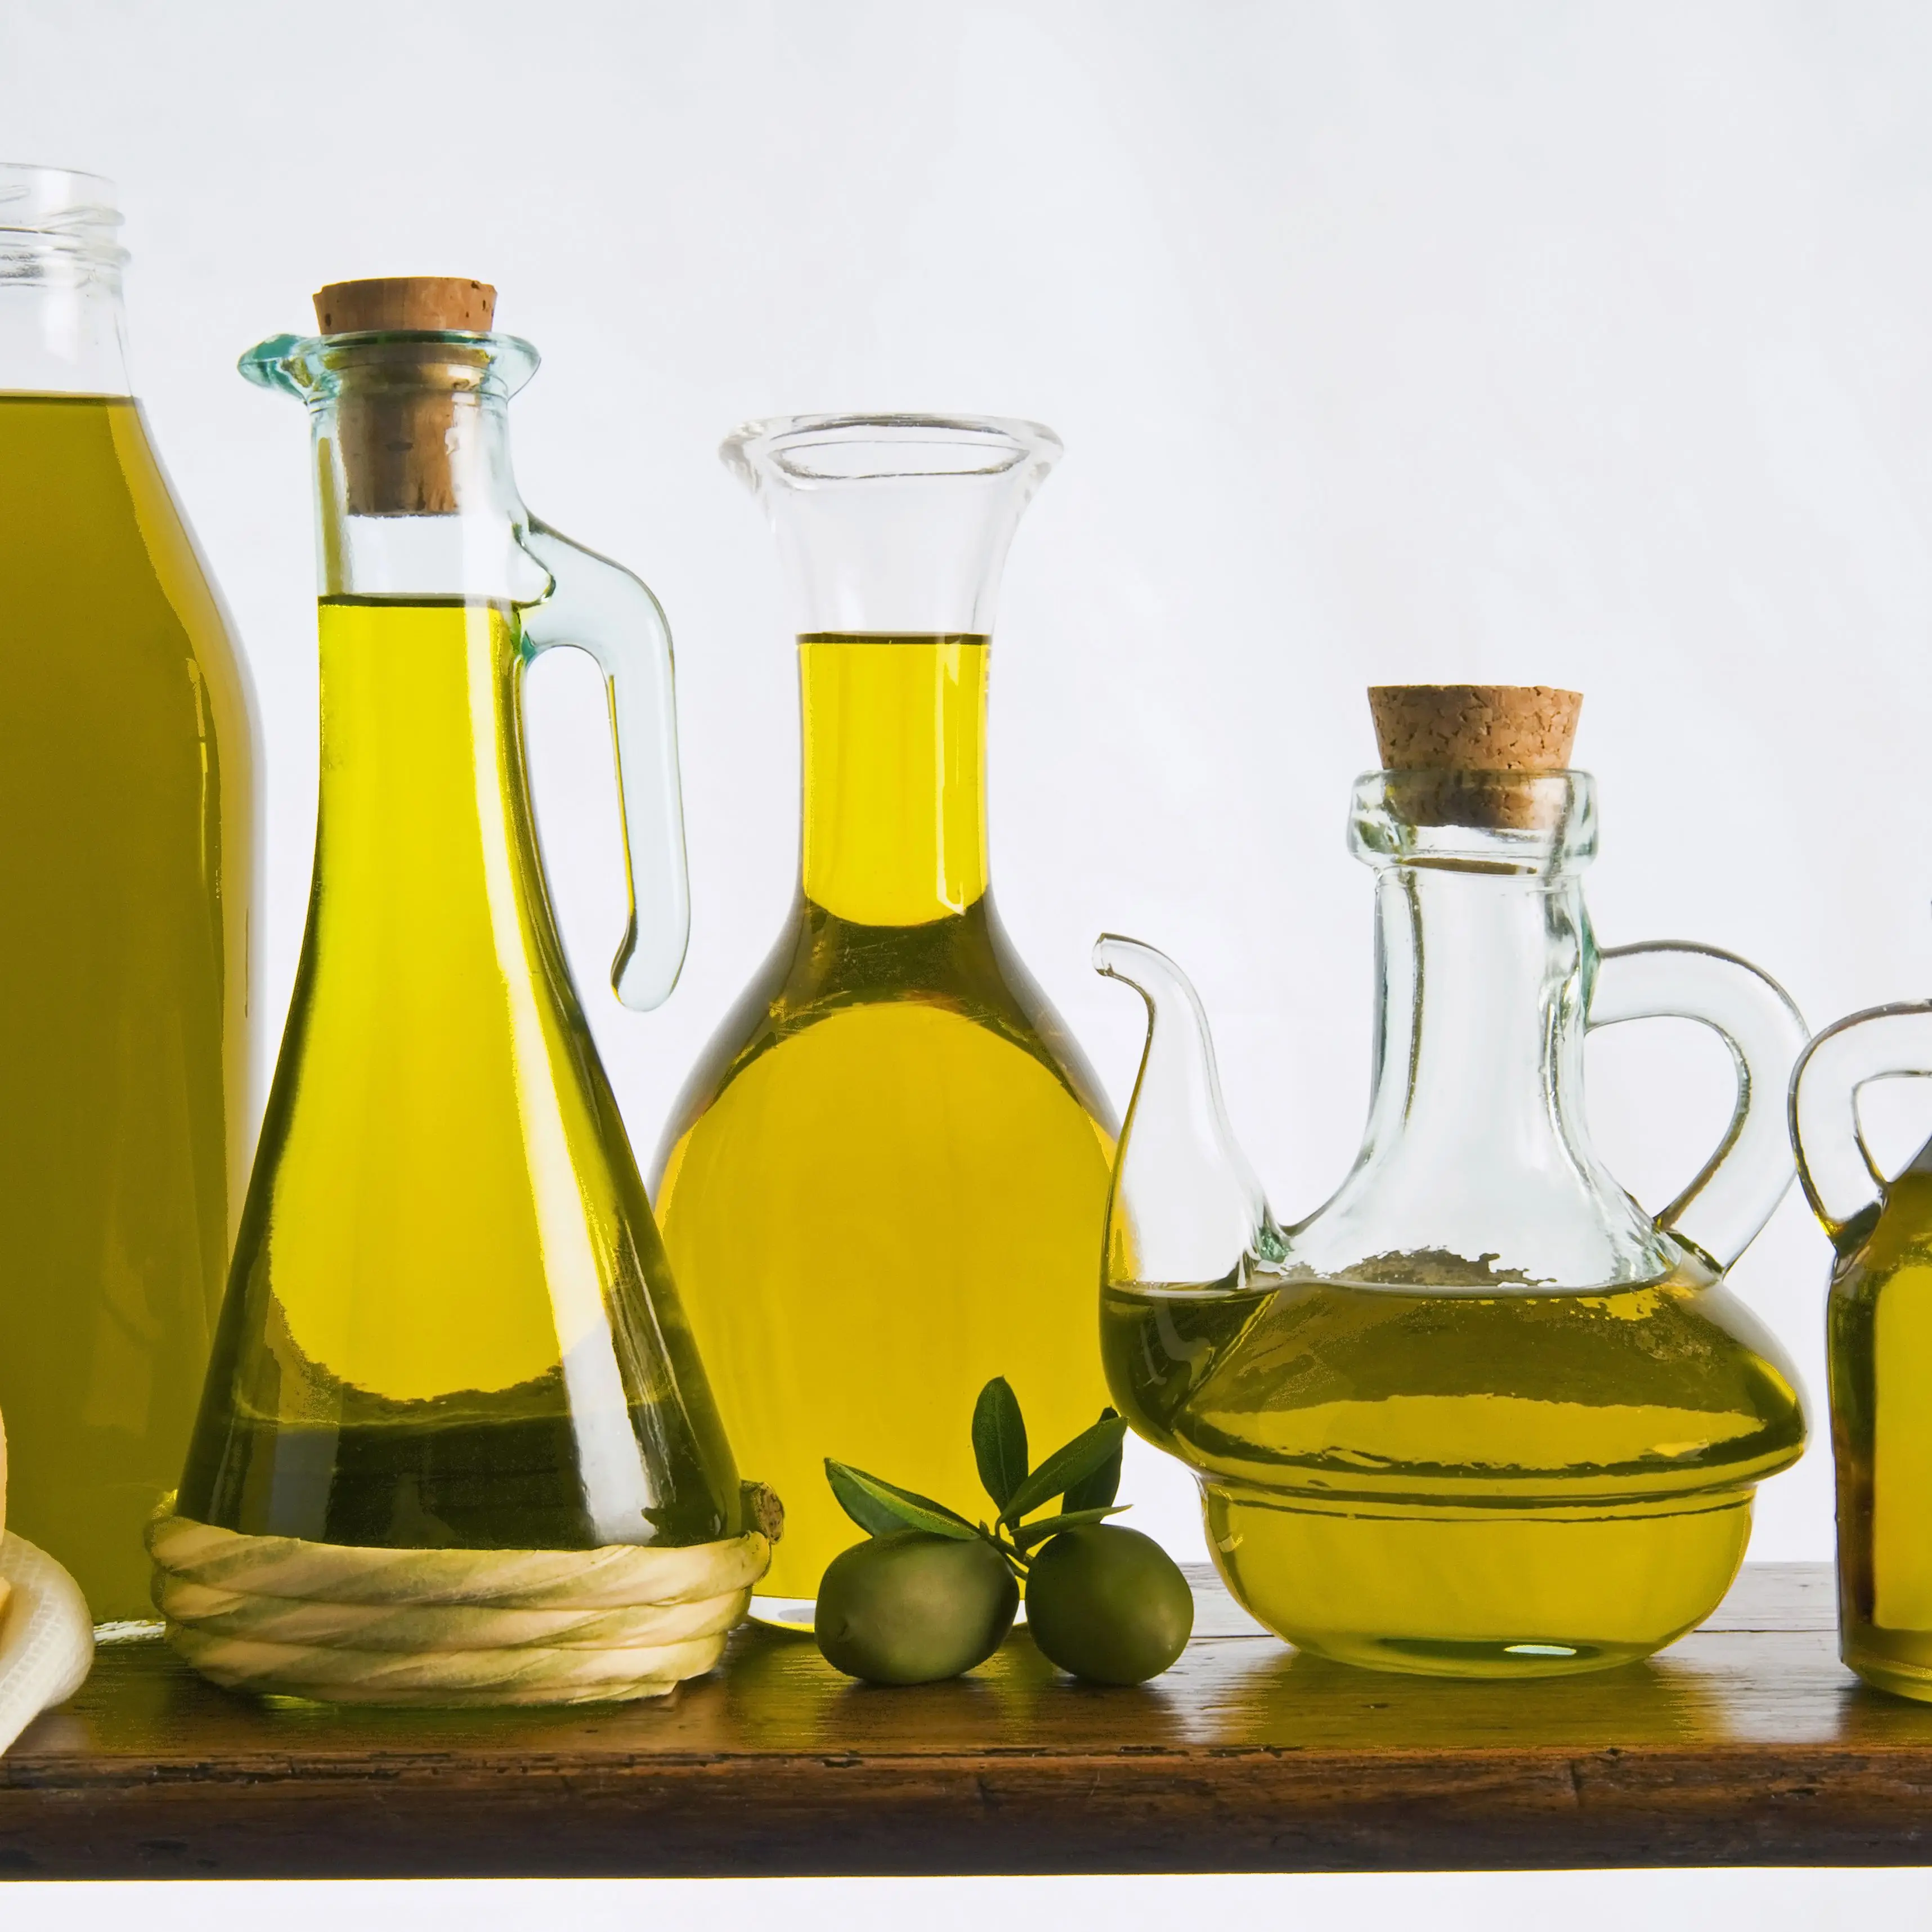 A bottle of olive oil. Растительное масло. Оливковое масло. Масло пищевое. Цвет оливкового масла.